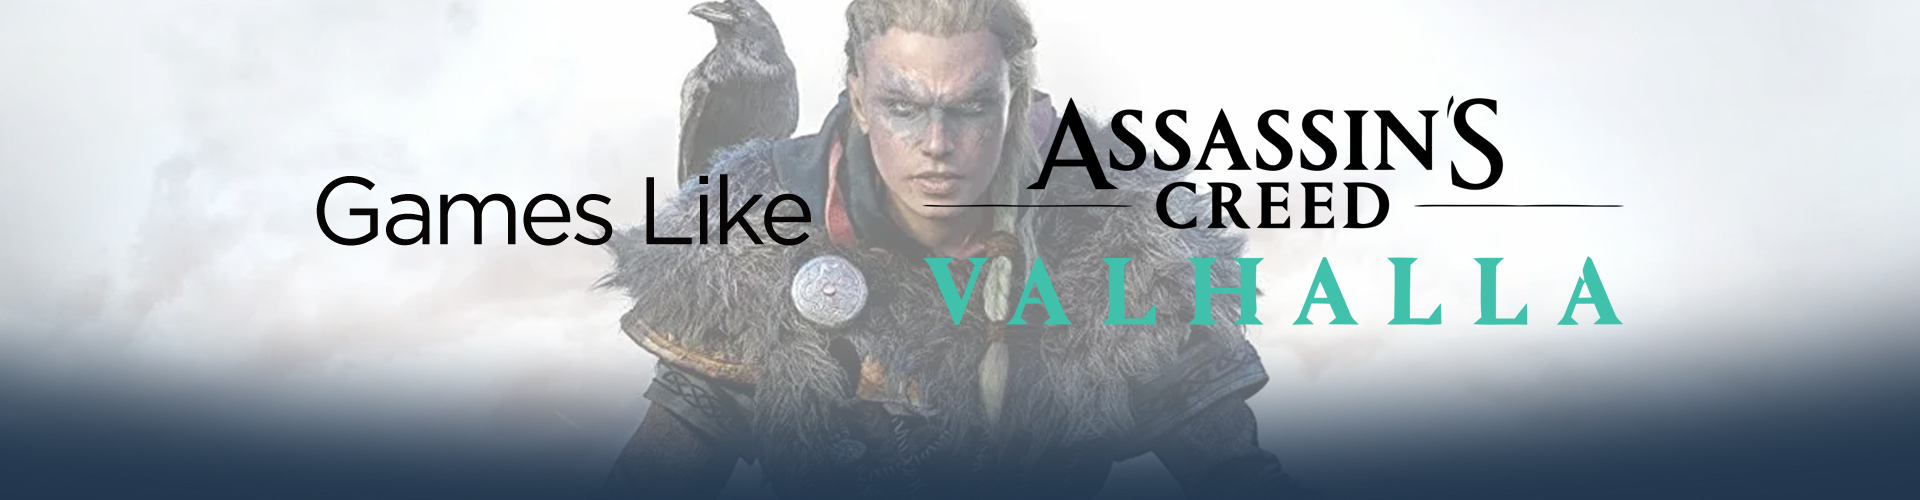 Los mejores juegos de vikingos como Assassin's Creed Valhalla